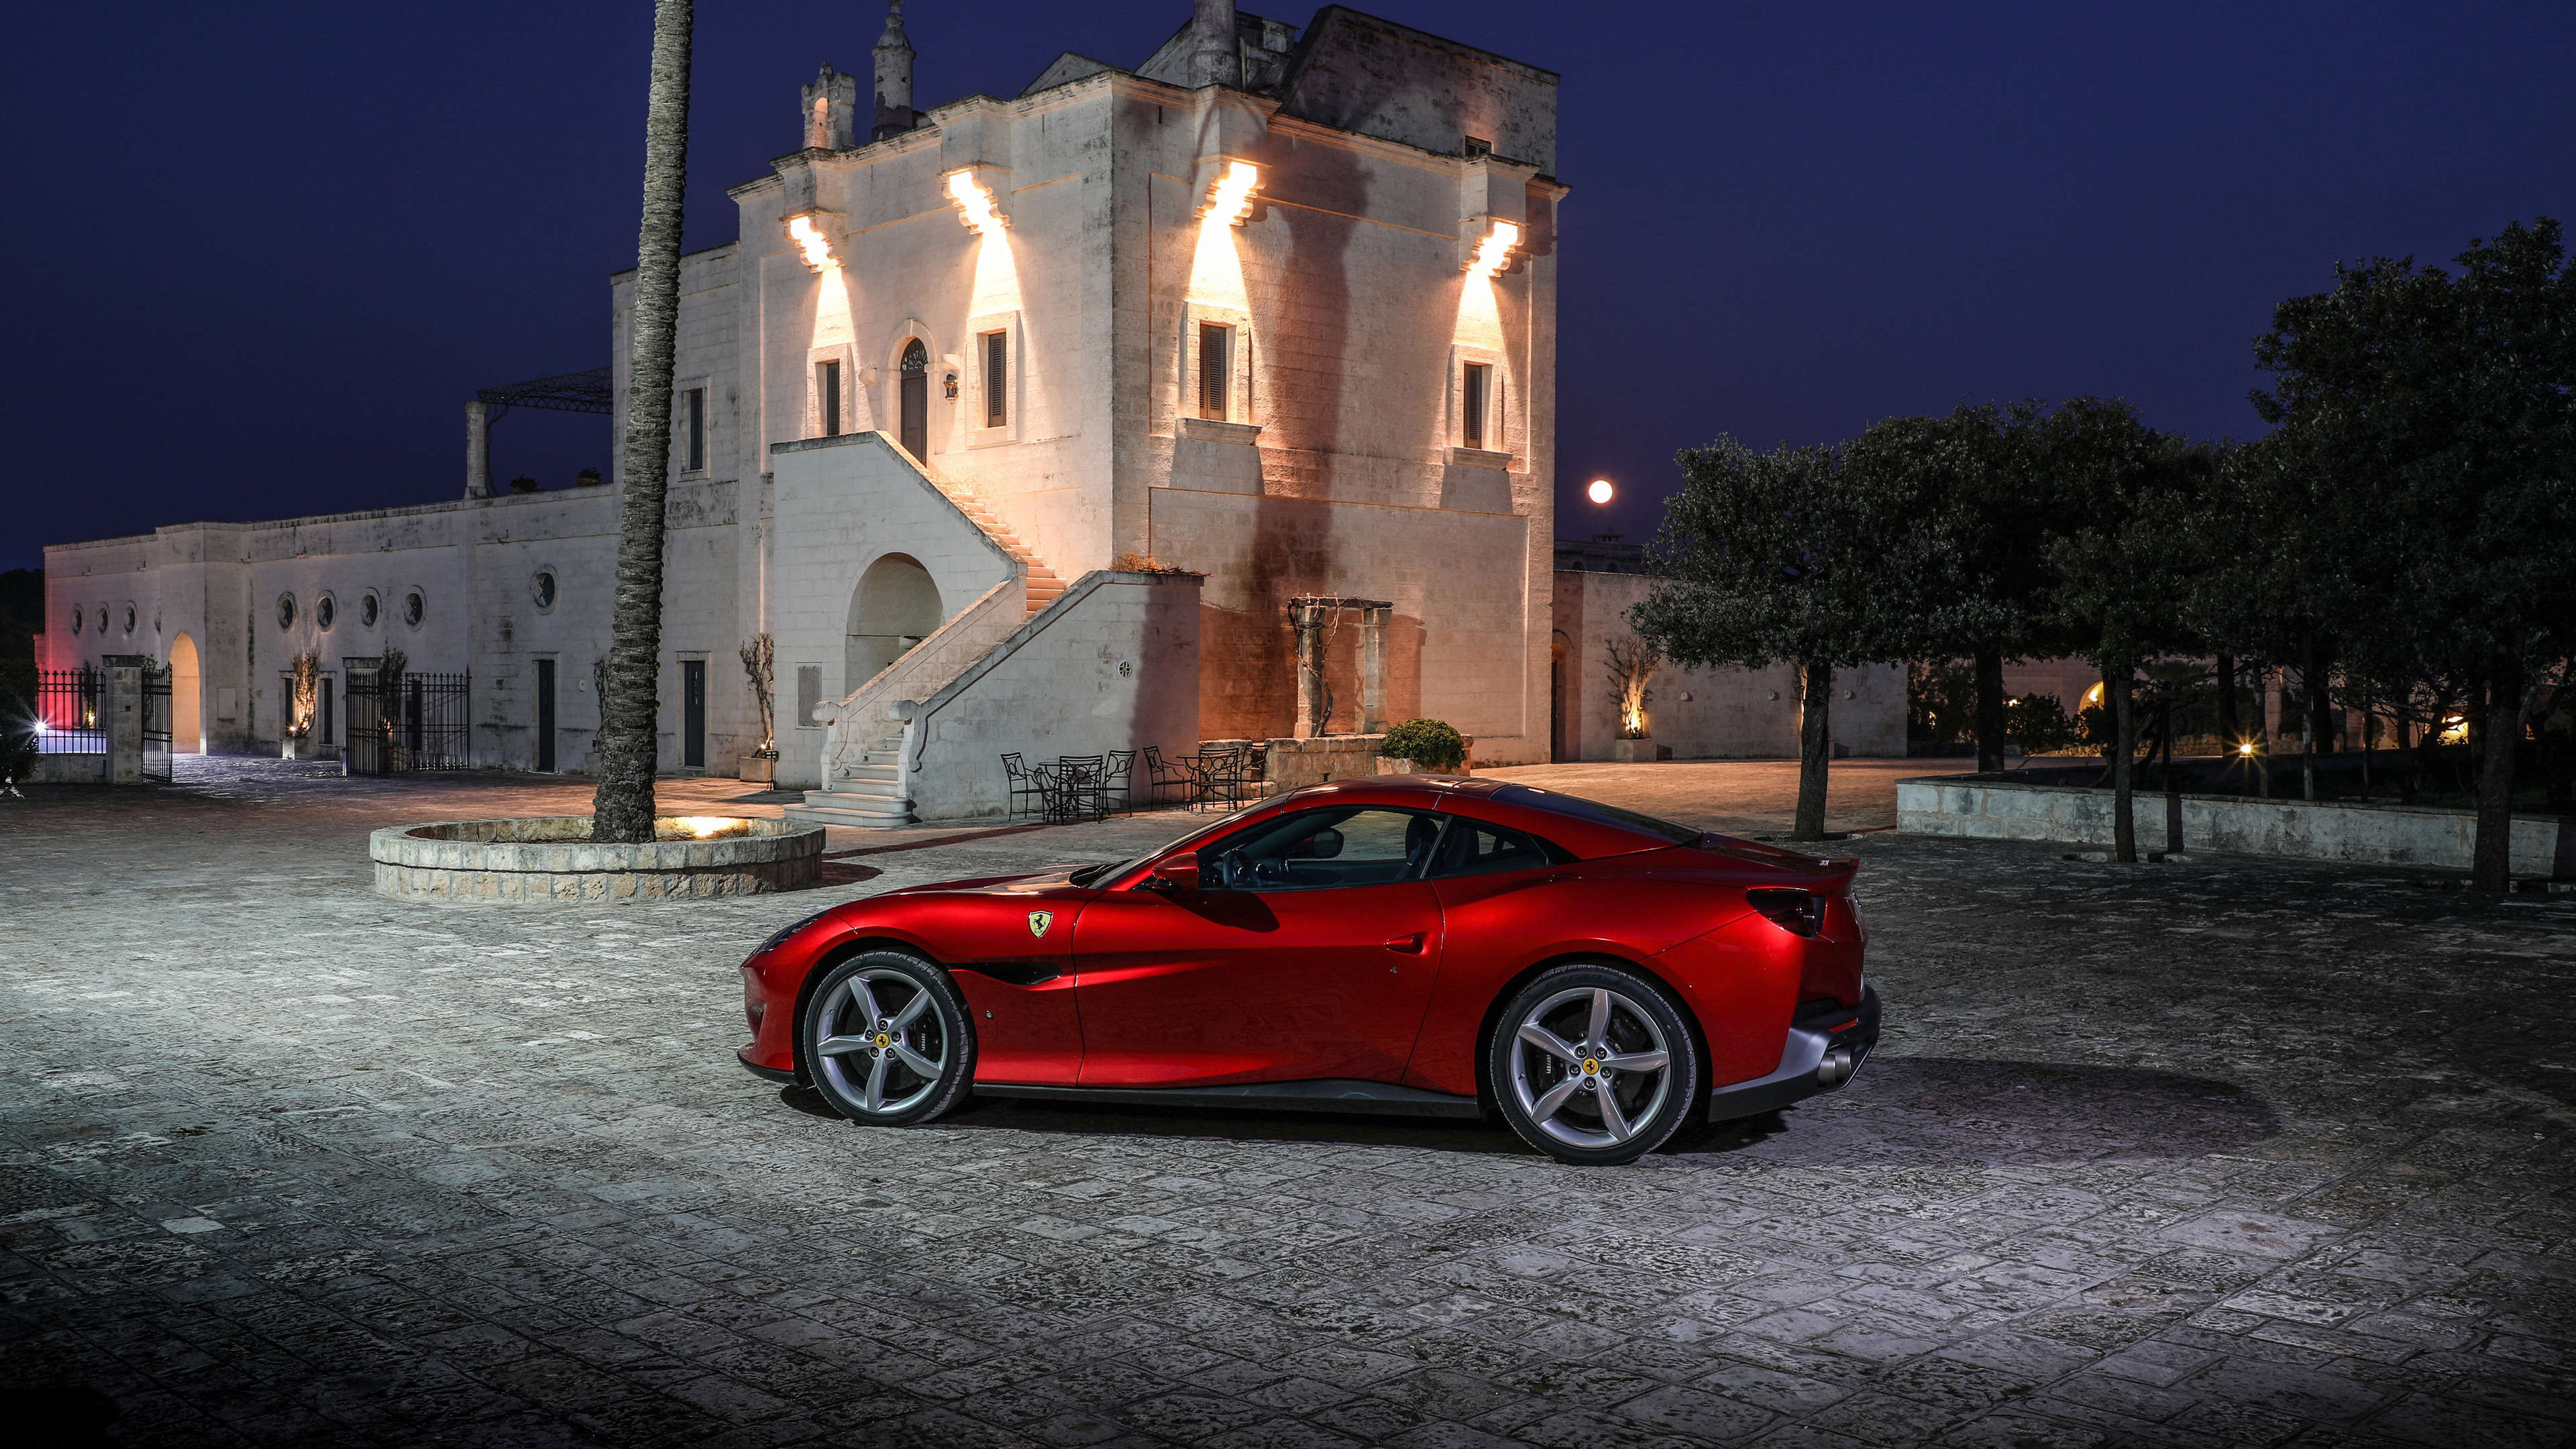 2018 ferrari portofino 4k 1539109967 - 2018 Ferrari Portofino 4k - hd-wallpapers, ferrari wallpapers, ferrari portofino wallpapers, cars wallpapers, 4k-wallpapers, 2018 cars wallpapers